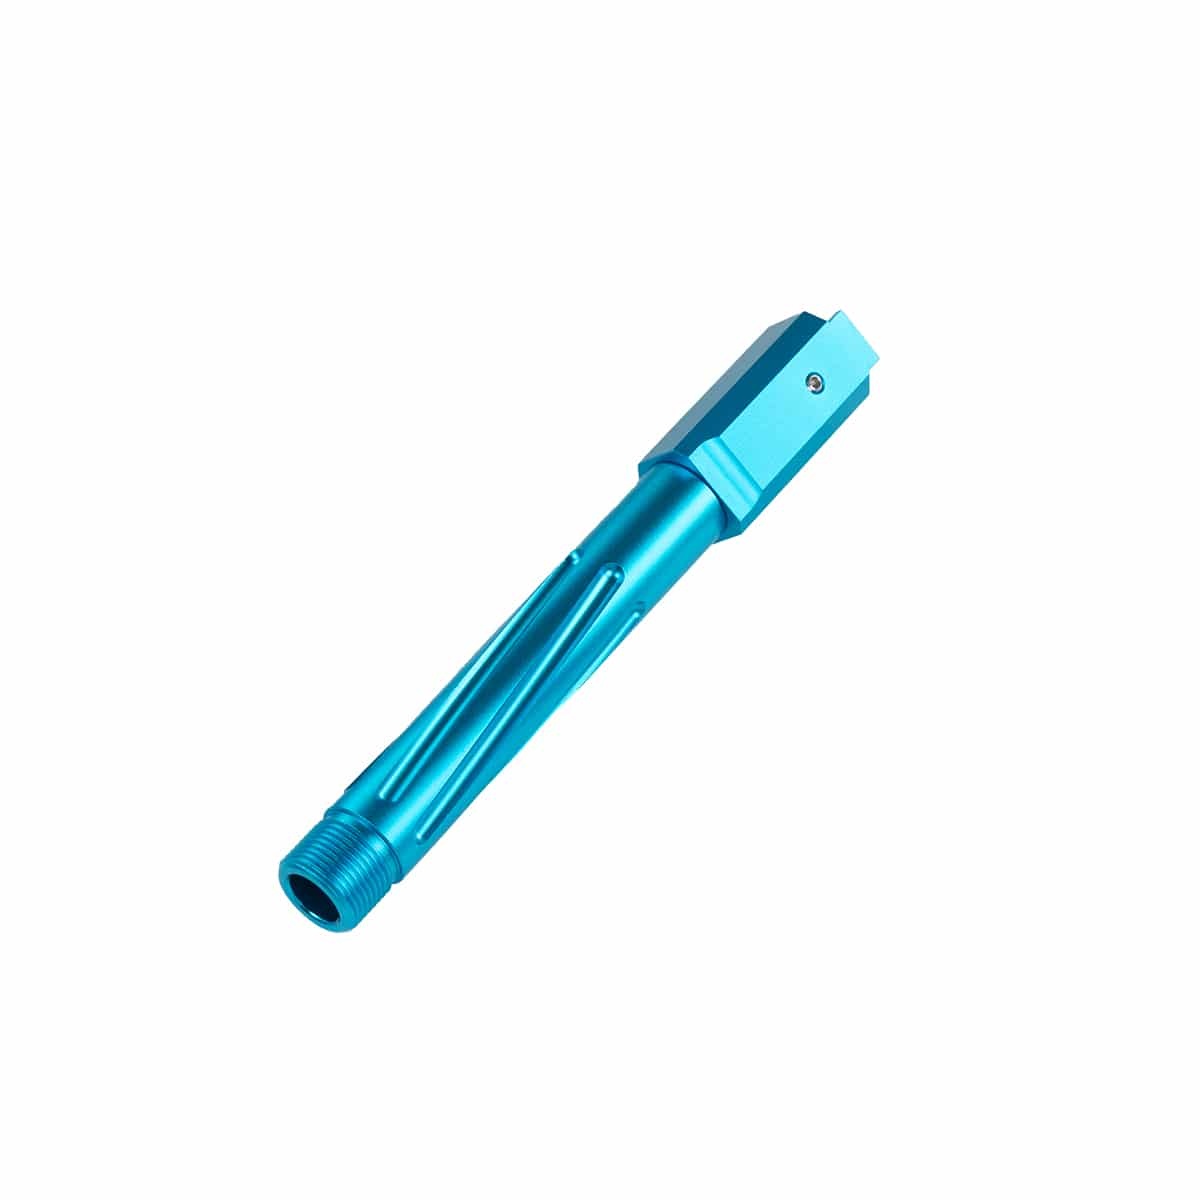 Novritsch Novritsch SSP18 Outer barrel TDC (CNC machined) - Light Blue